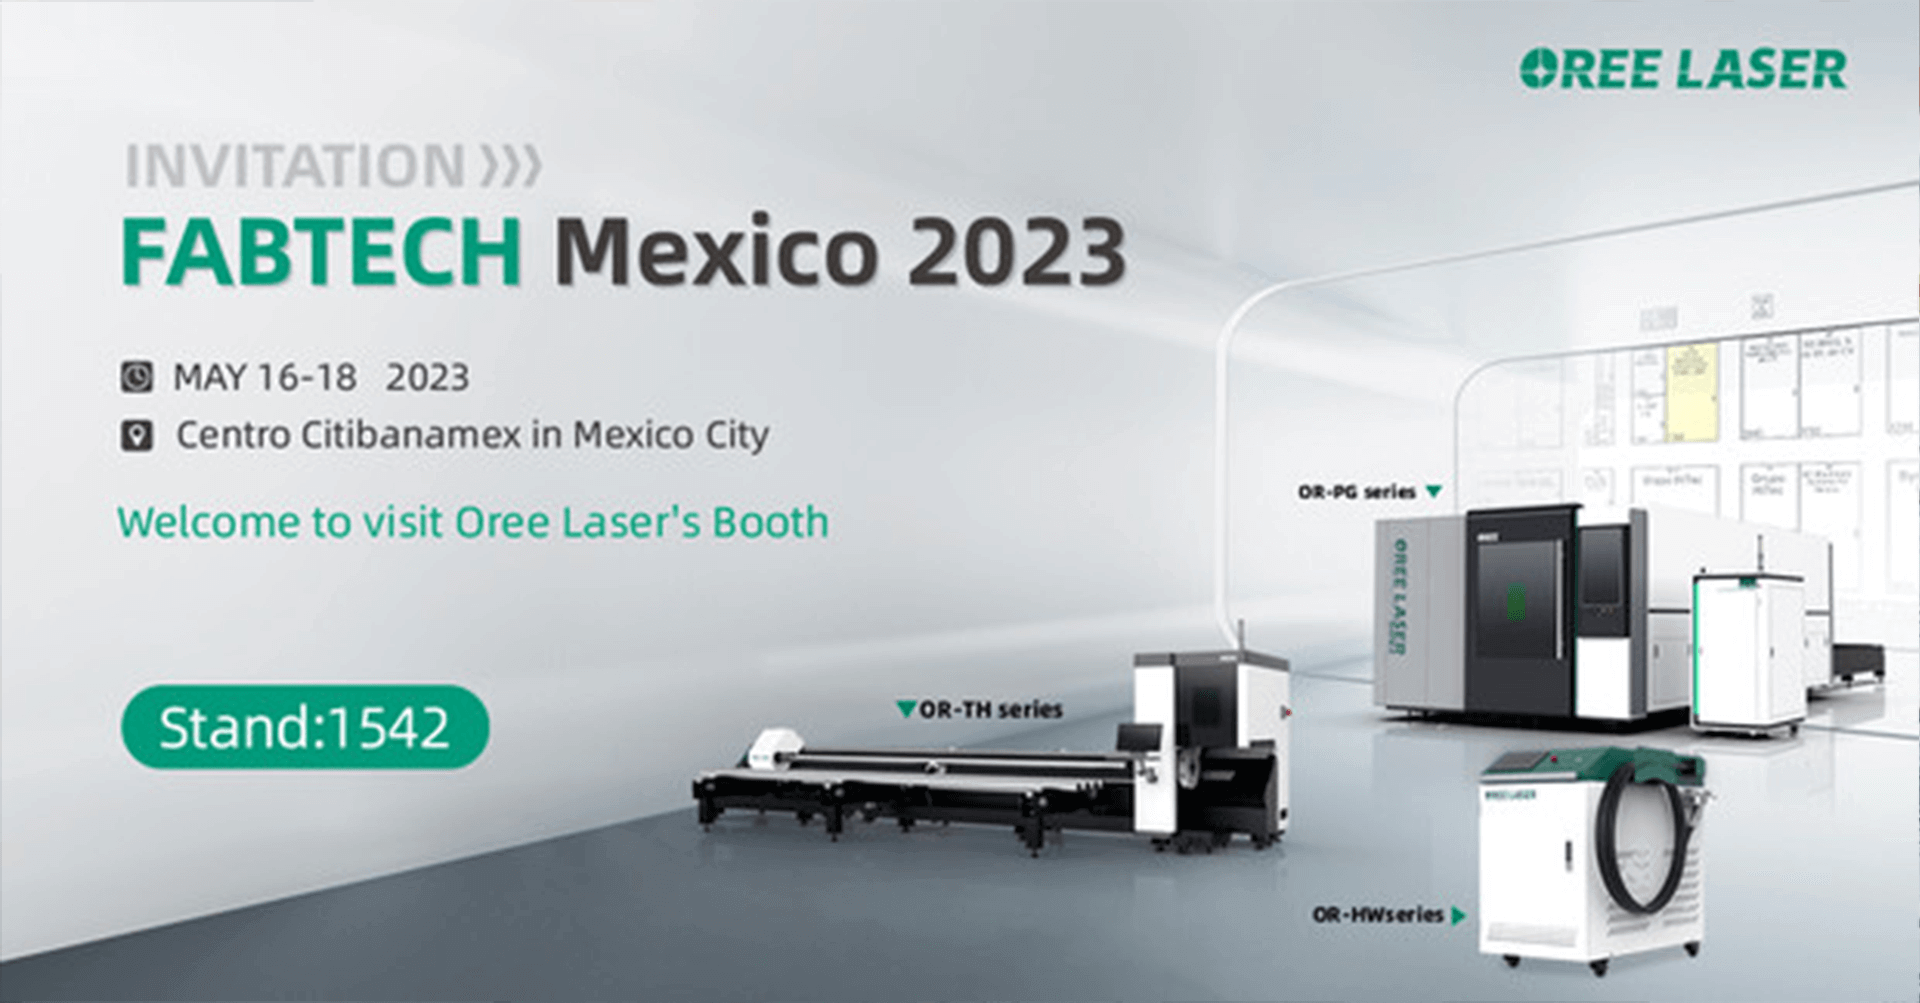 يسر OREE LASER أن تعلن عن انعقاد معرض FABTECH 2023 في المكسيك في الفترة من 16 مايو إلى 18 مايو ، وحضور OREE Laser.